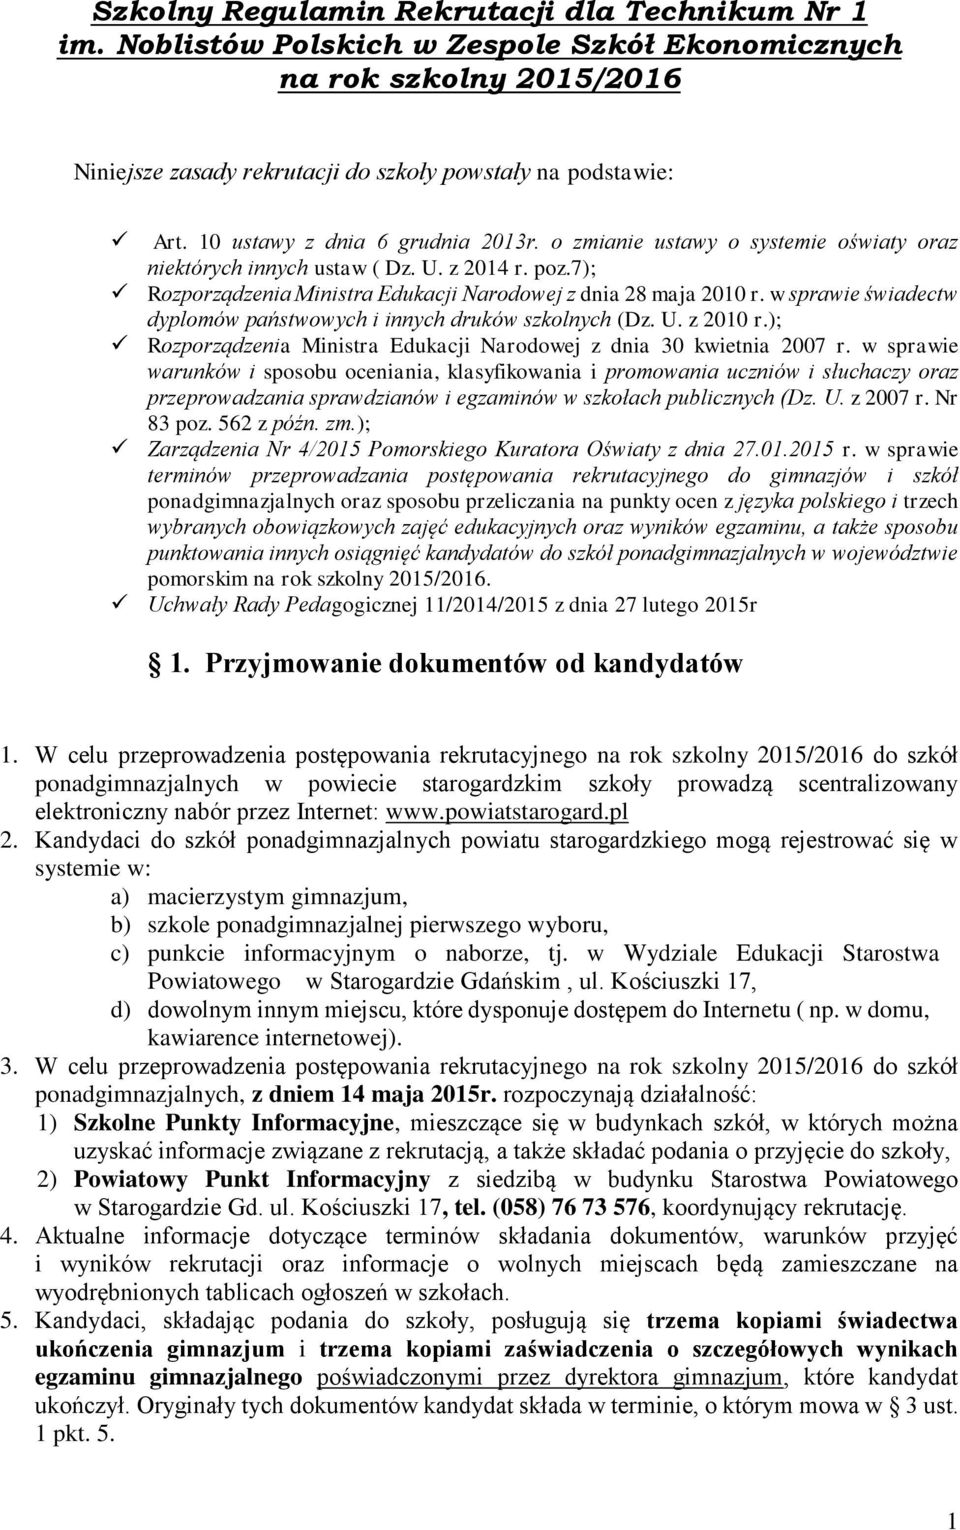 w sprawie świadectw dyplomów państwowych i innych druków szkolnych (Dz. U. z 2010 r.); Rozporządzenia Ministra Edukacji Narodowej z dnia 30 kwietnia 2007 r.